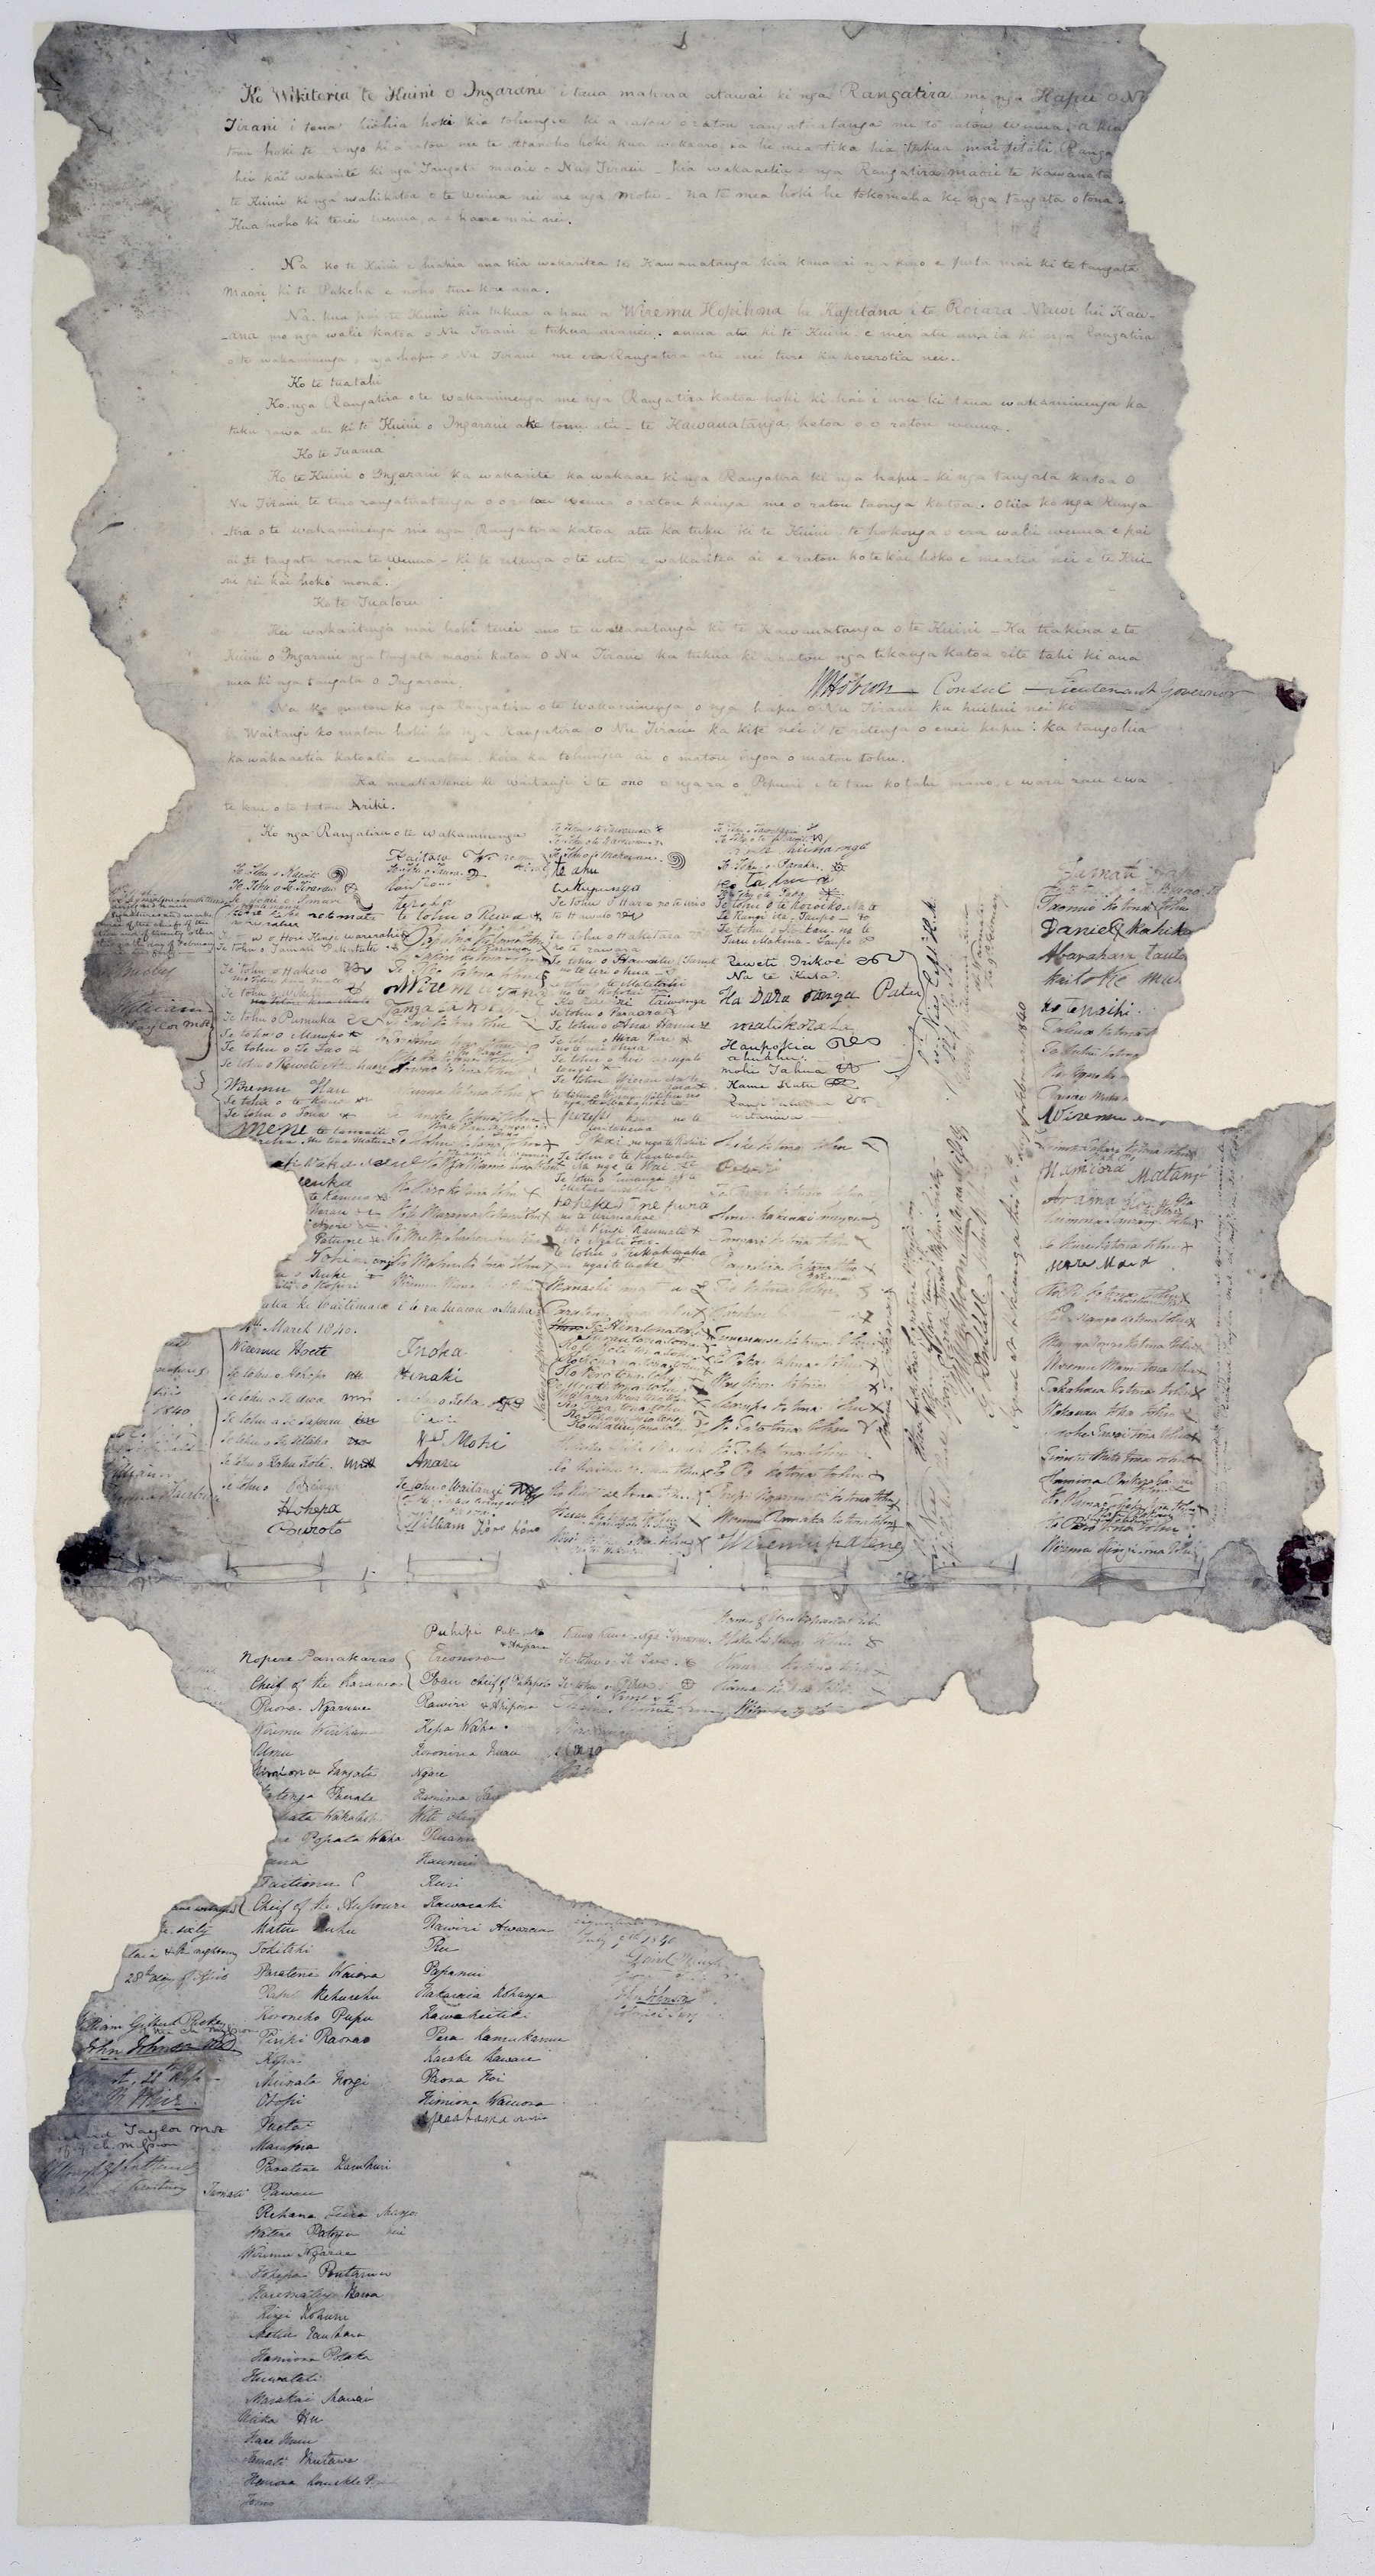 The Treaty of Waitangi.